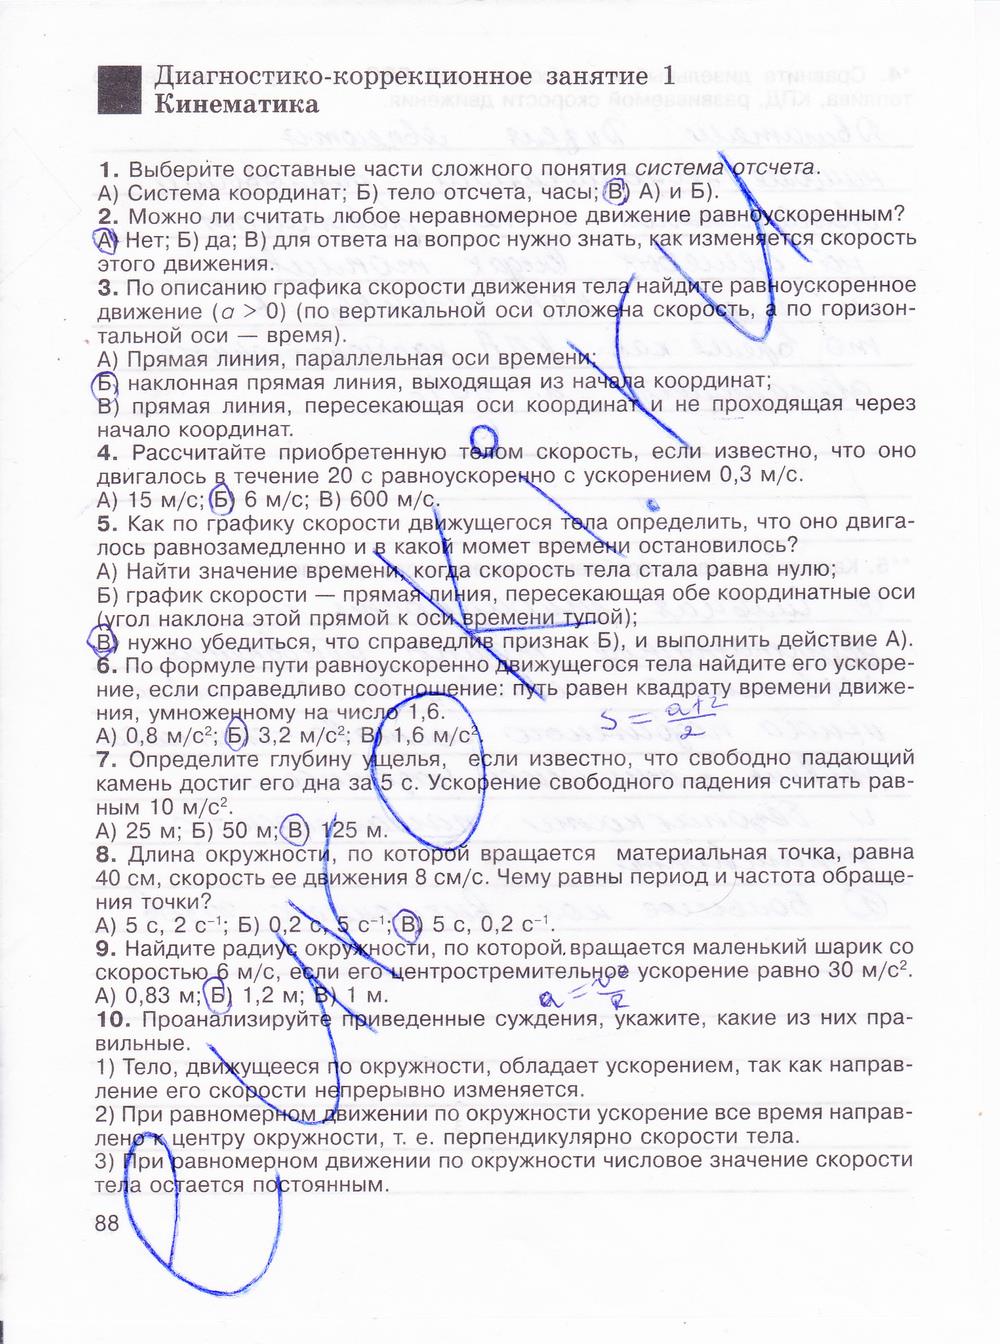 гдз 8 класс рабочая тетрадь страница 88 физика Мартынова, Иванова, Воронина